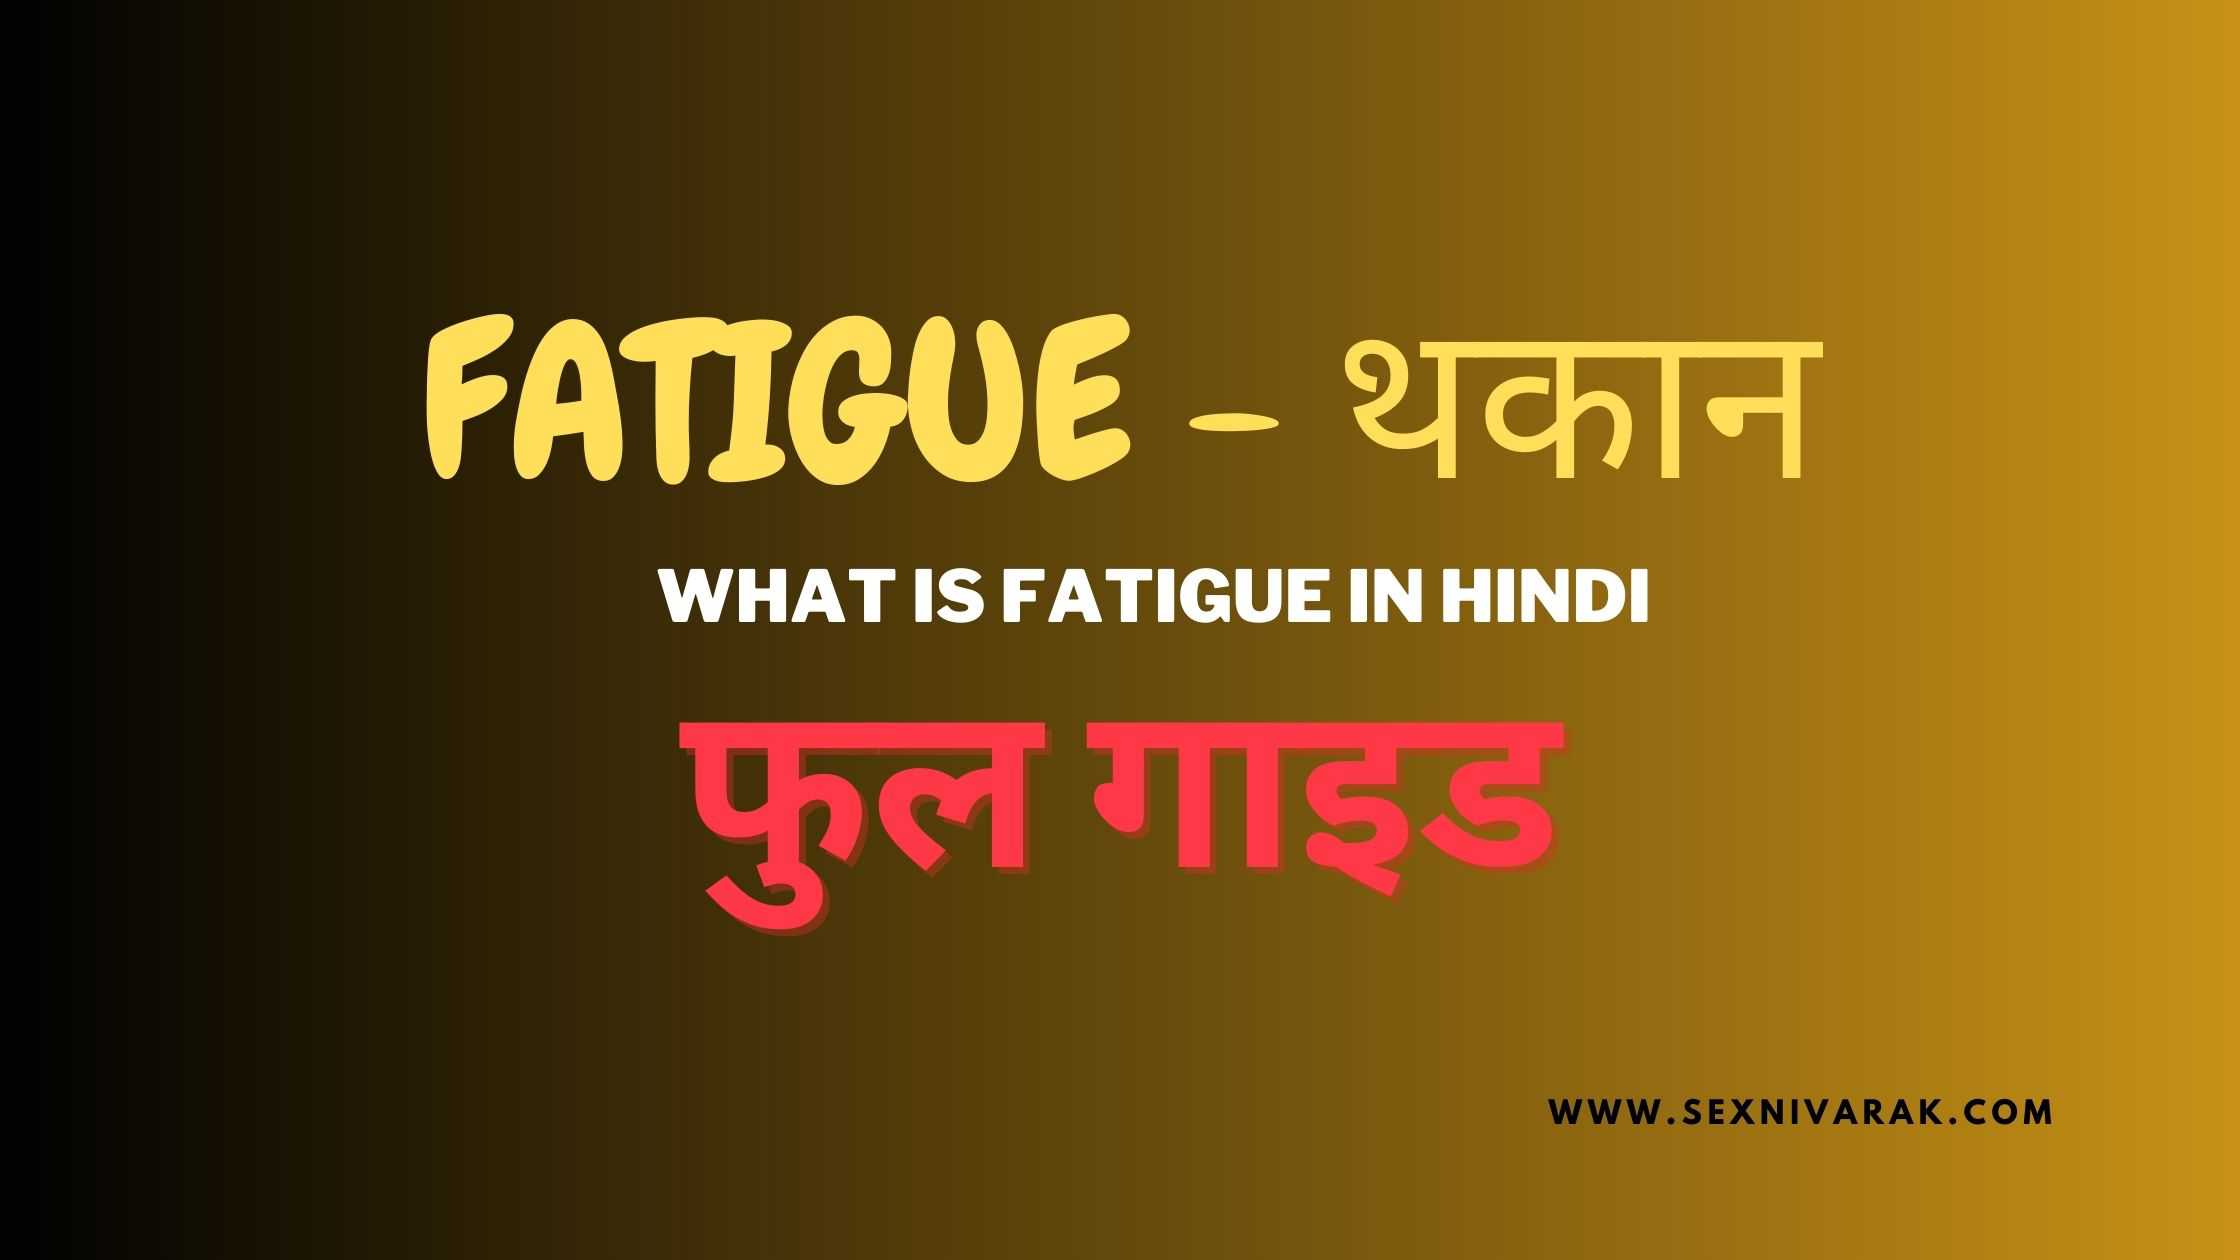 Fatigue in hindi